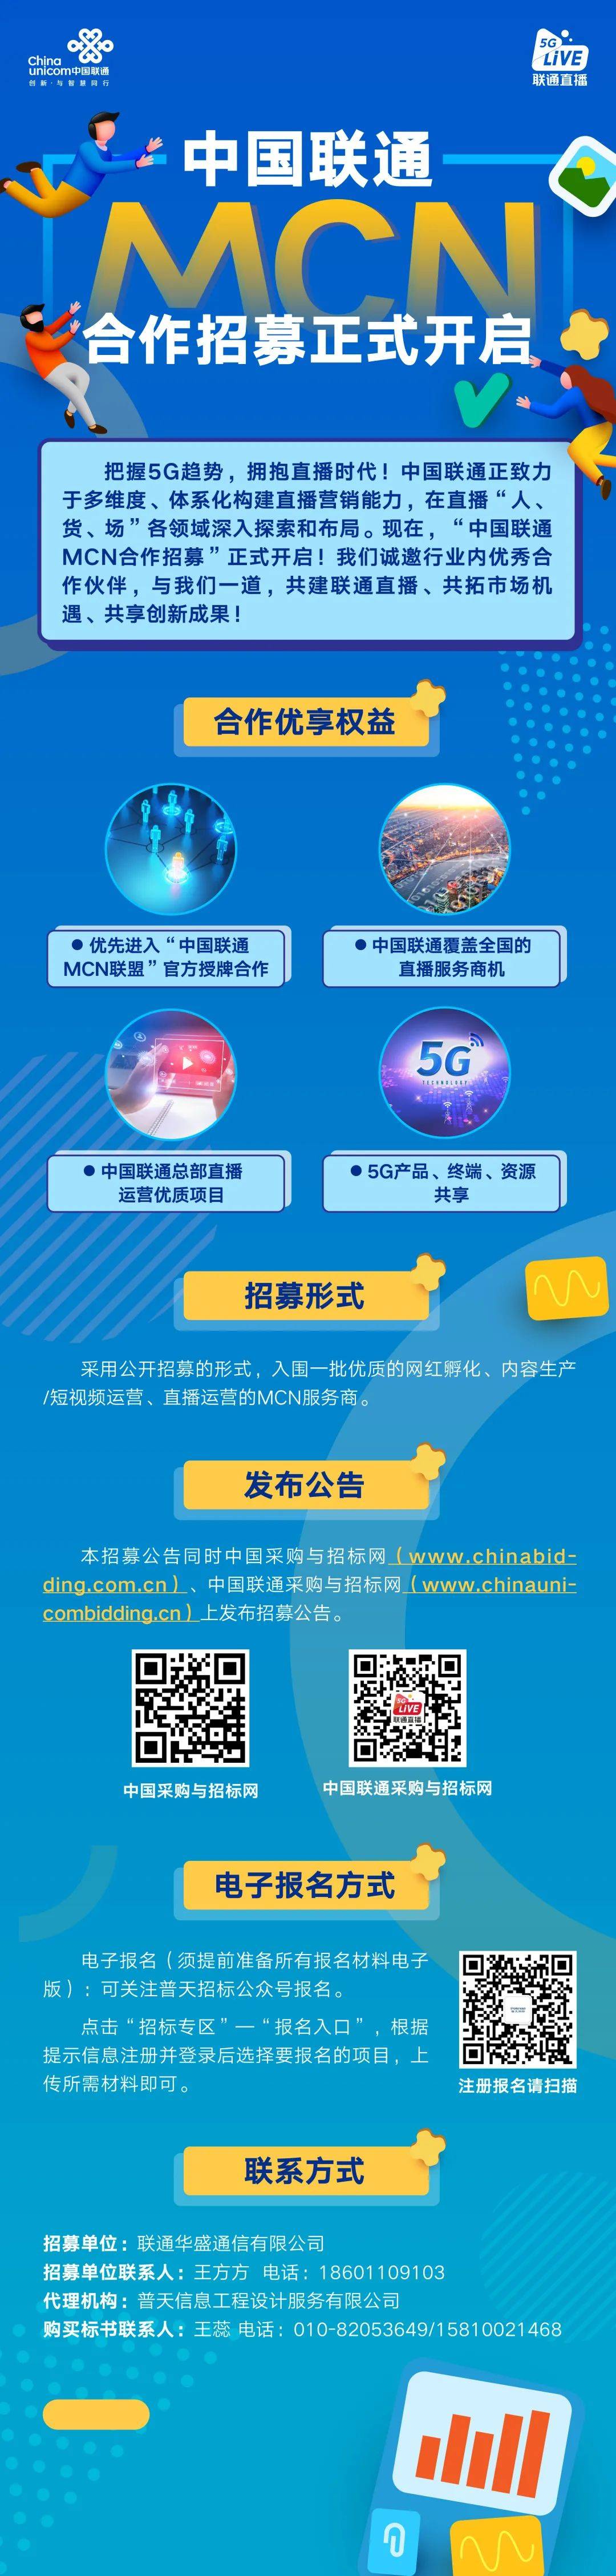 中国联通官网手机资讯中国联通手机网上营业厅